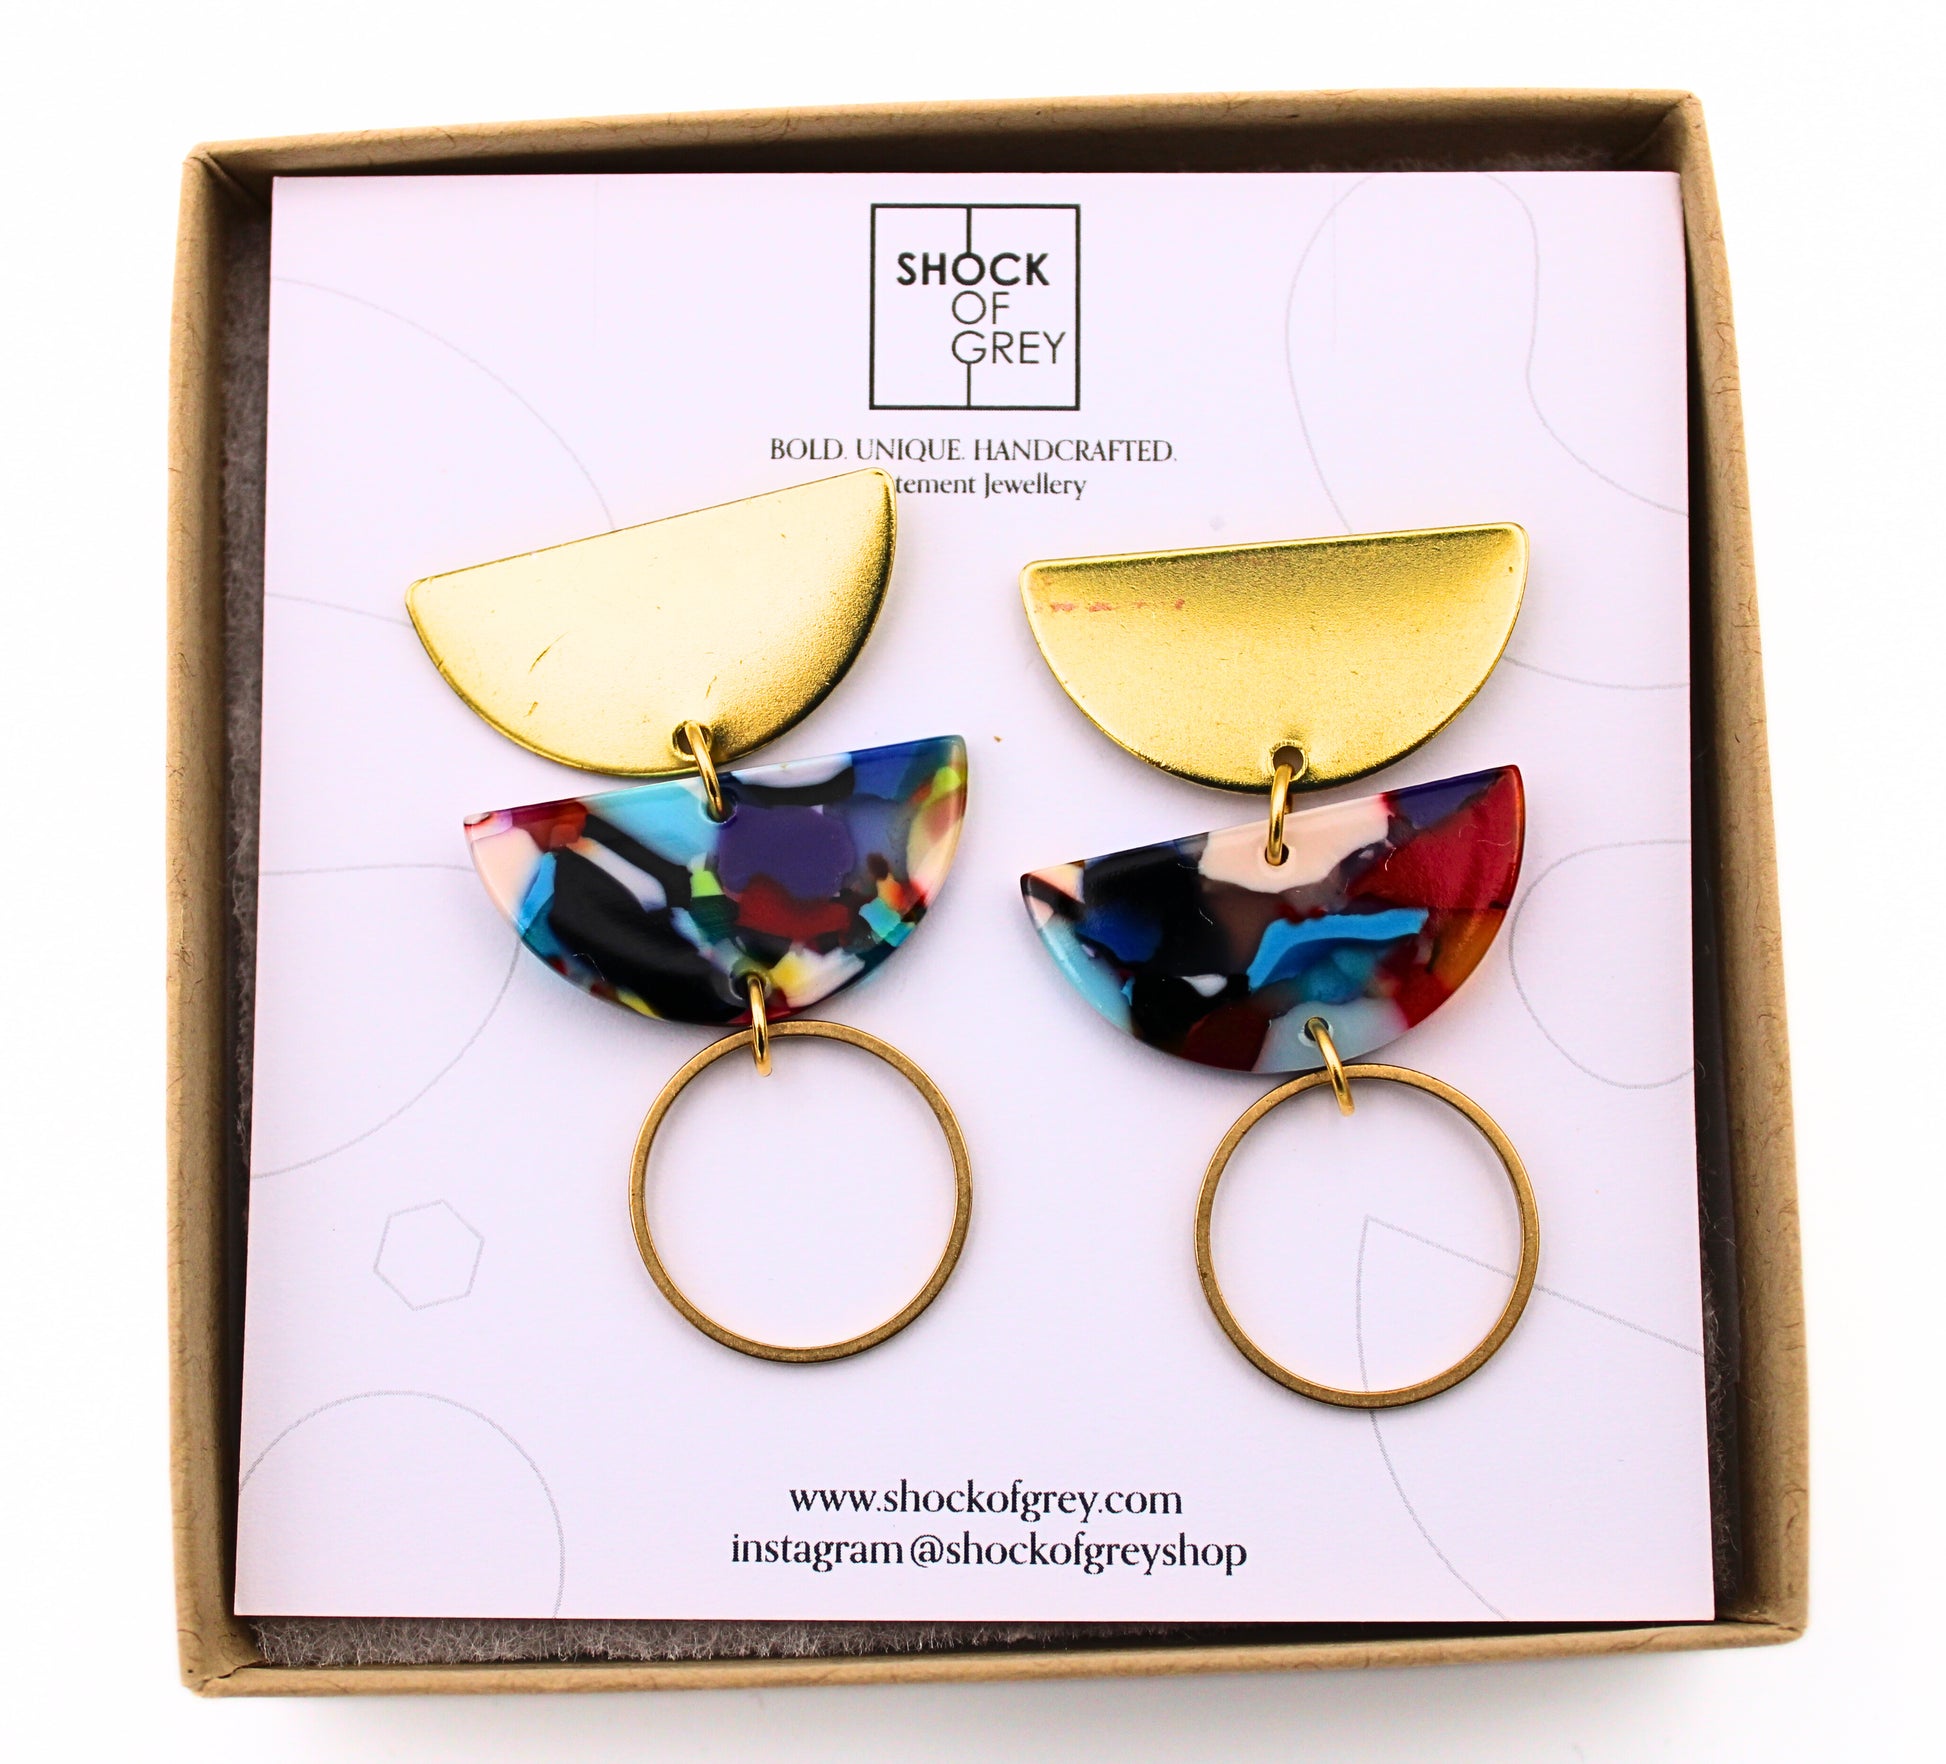 Jenny Acrylic Earrings in Confetti in Box